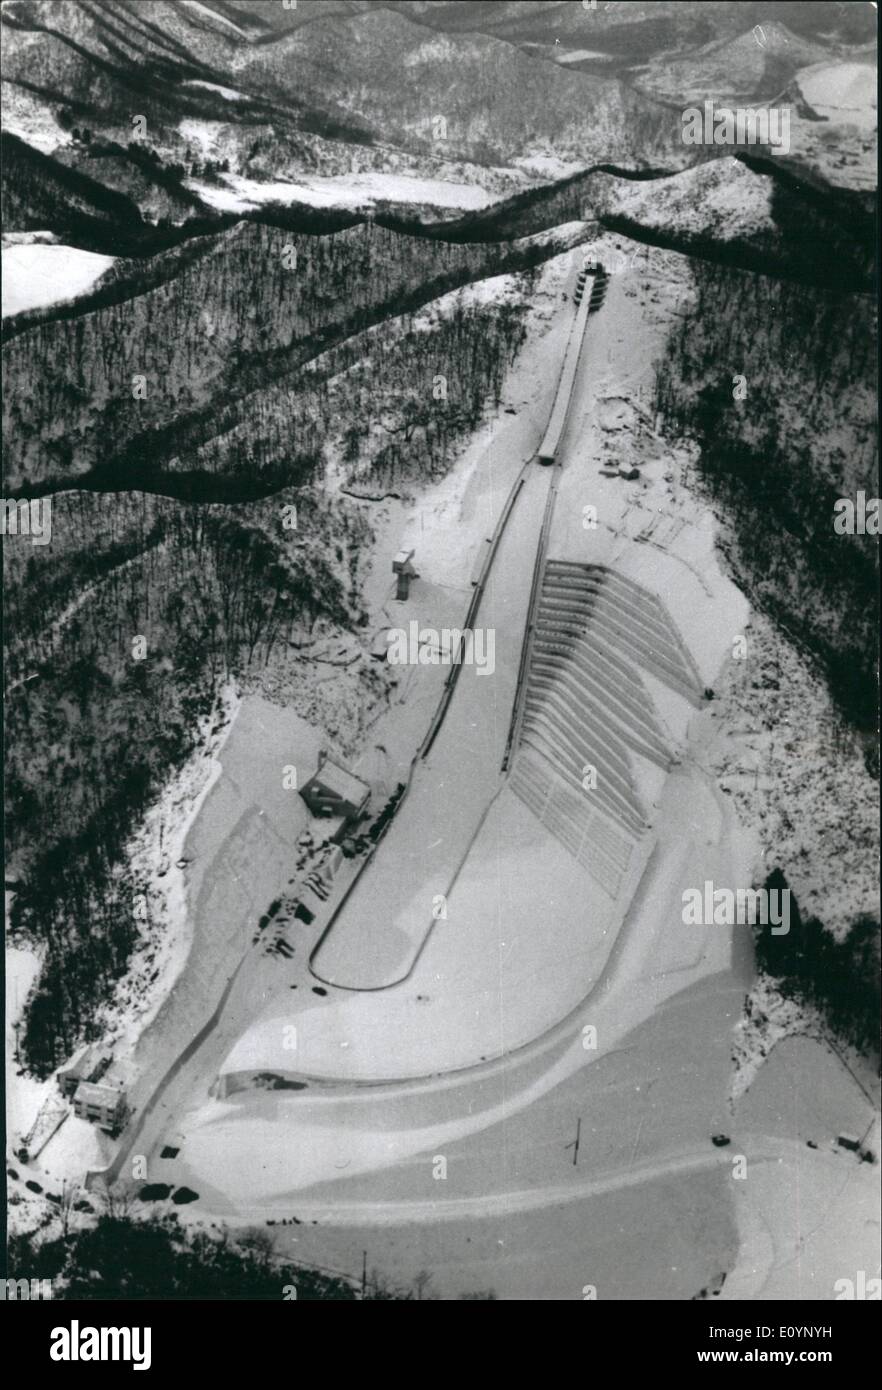 01 janv., 1971 - Sapporo, Japon - Site de Jeux Olympiques d'hiver '72 de 90 mètres de l'Okurayama ski jump hill presque terminé. Il est l'un des quatorze sites sportifs, et possède des installations pour les 50 000 spectateurs. Plus de 22 000 mètres carrés de terre a été enlevé pour construire le saut. Banque D'Images